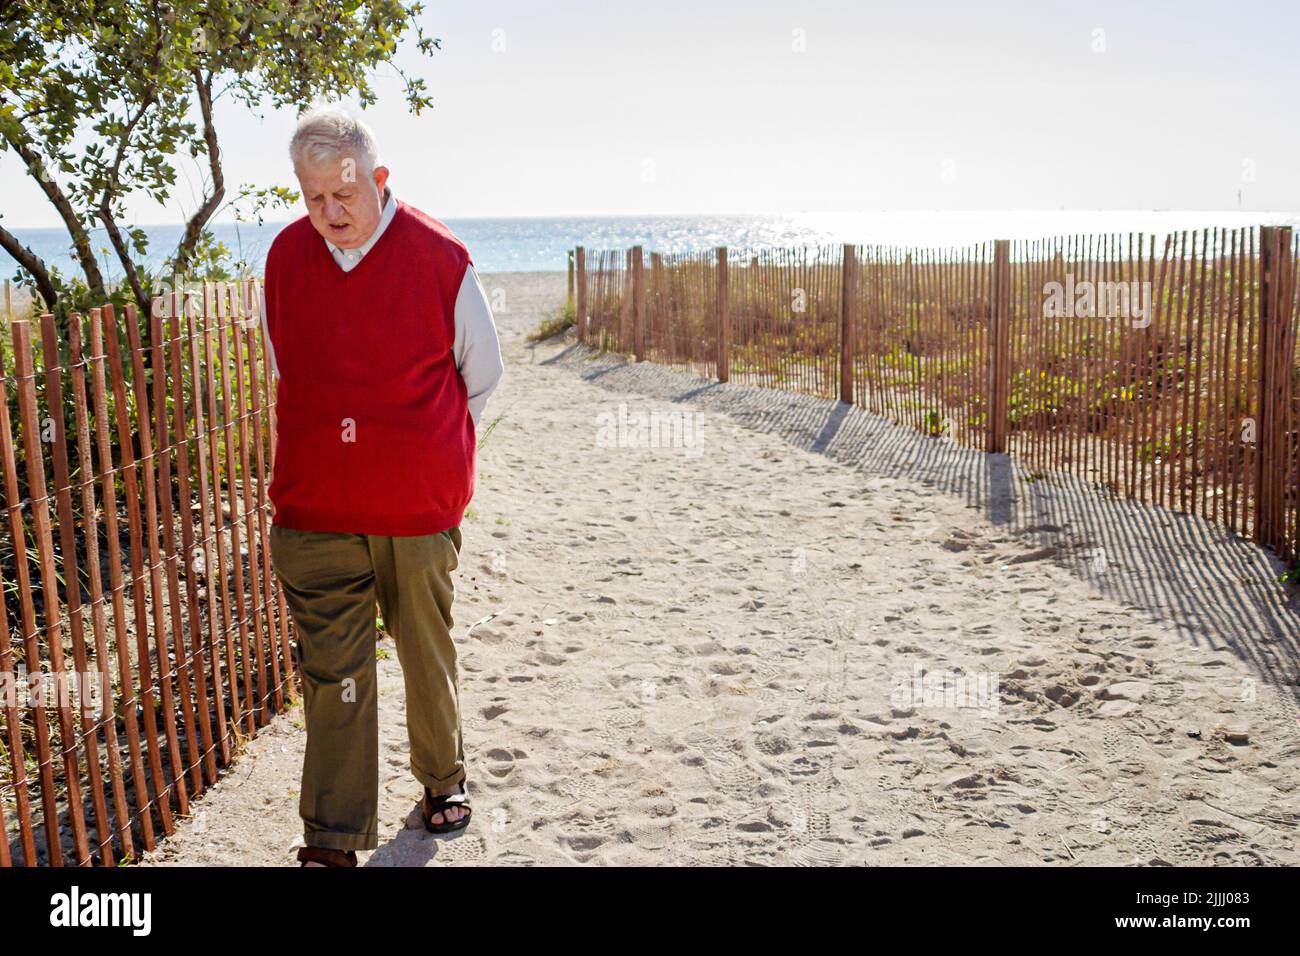 Miami Beach Florida, anziani anziani anziani anziani cittadini pensionati pensionati anziani pensionati pensionati anziani pensionati, spiagge pubbliche spiaggia, percorso di sabbia Foto Stock